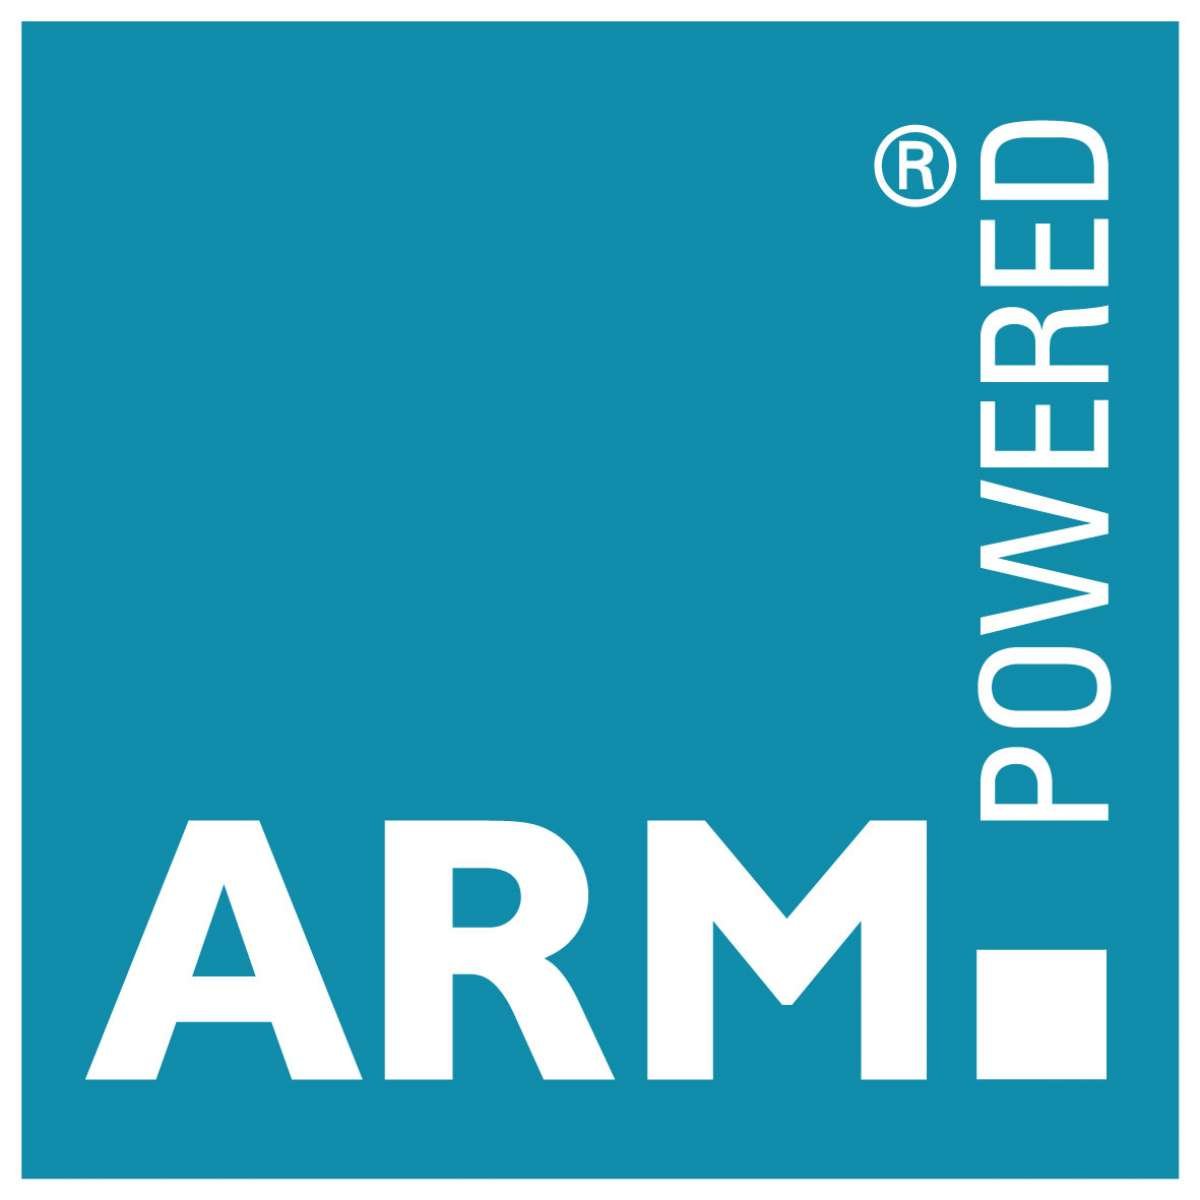 ARM pristatė naują GPU seriją – Mali T800